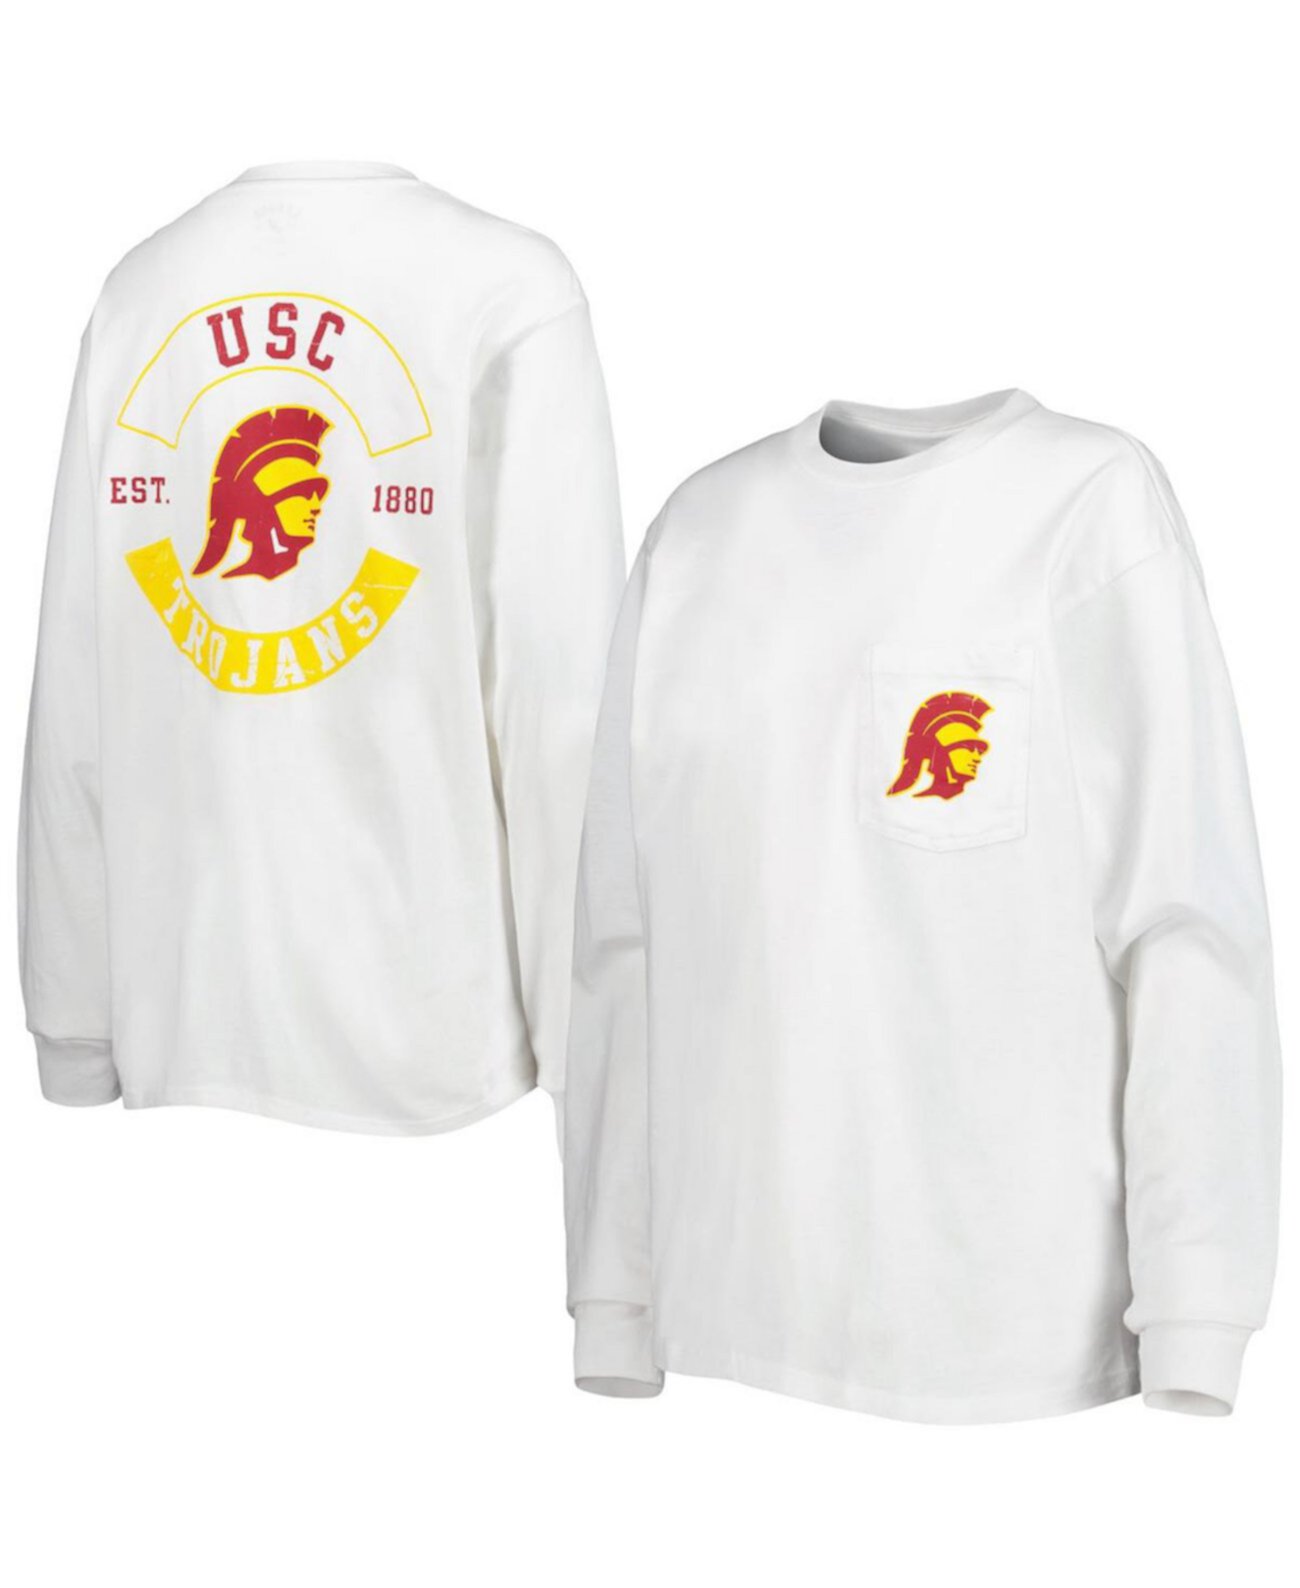 Женская белая футболка с длинным рукавом с крупными карманами Usc Trojans League Collegiate Wear